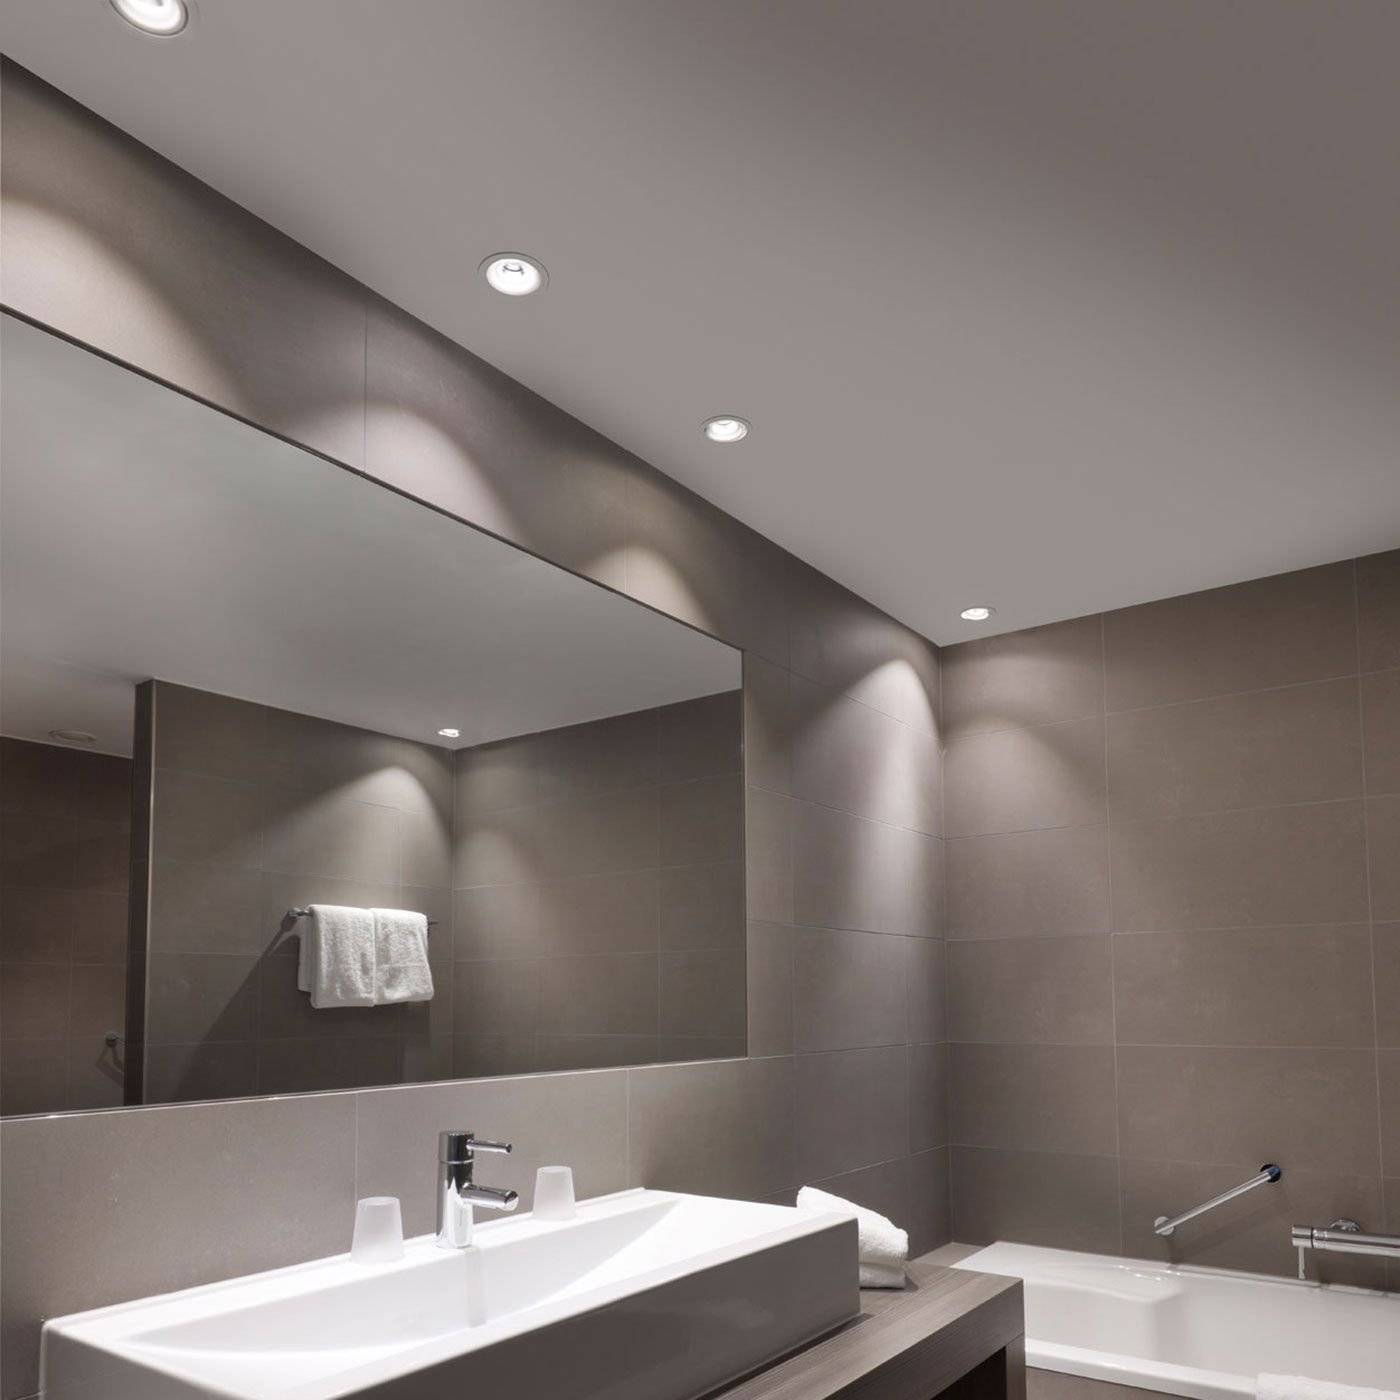 Освещение в ванной комнате с натяжным потолком: точечные светильники для натяжных потолков в ванную, потолок с подсветкой, потолочные светодиодные светильники